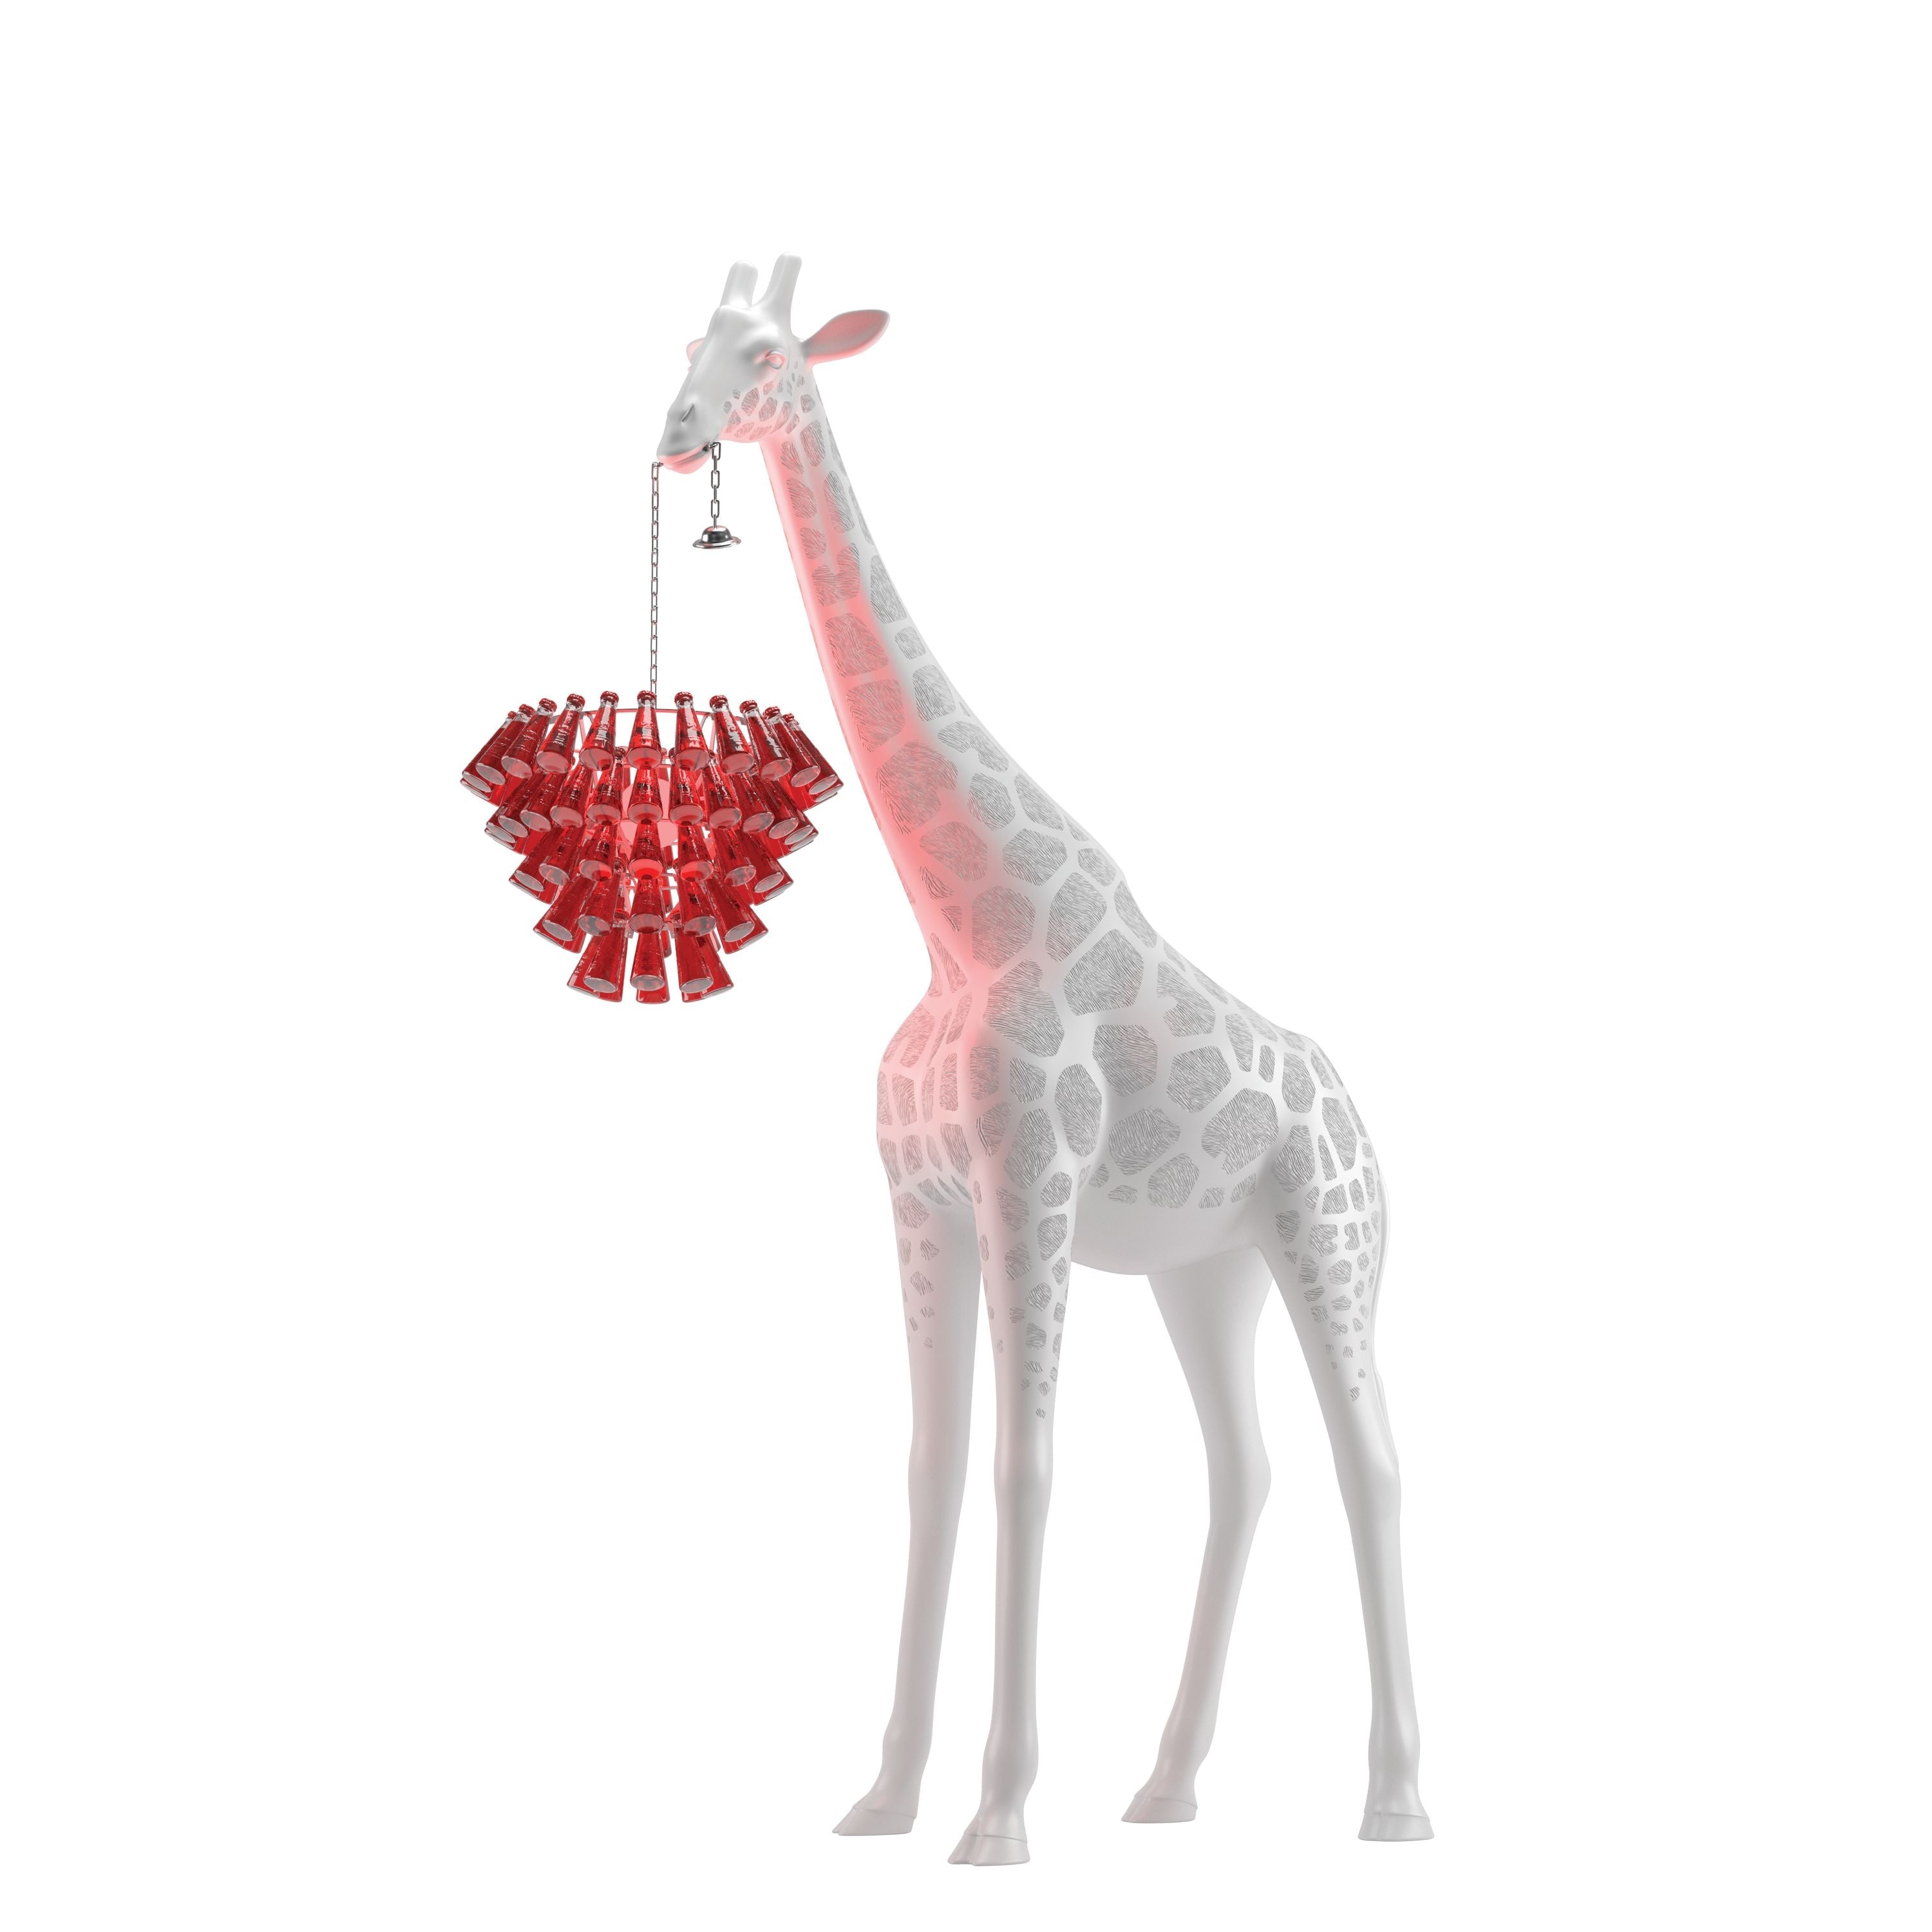 Qeeboo Giraff i kærlighed m udendørs hvide campari